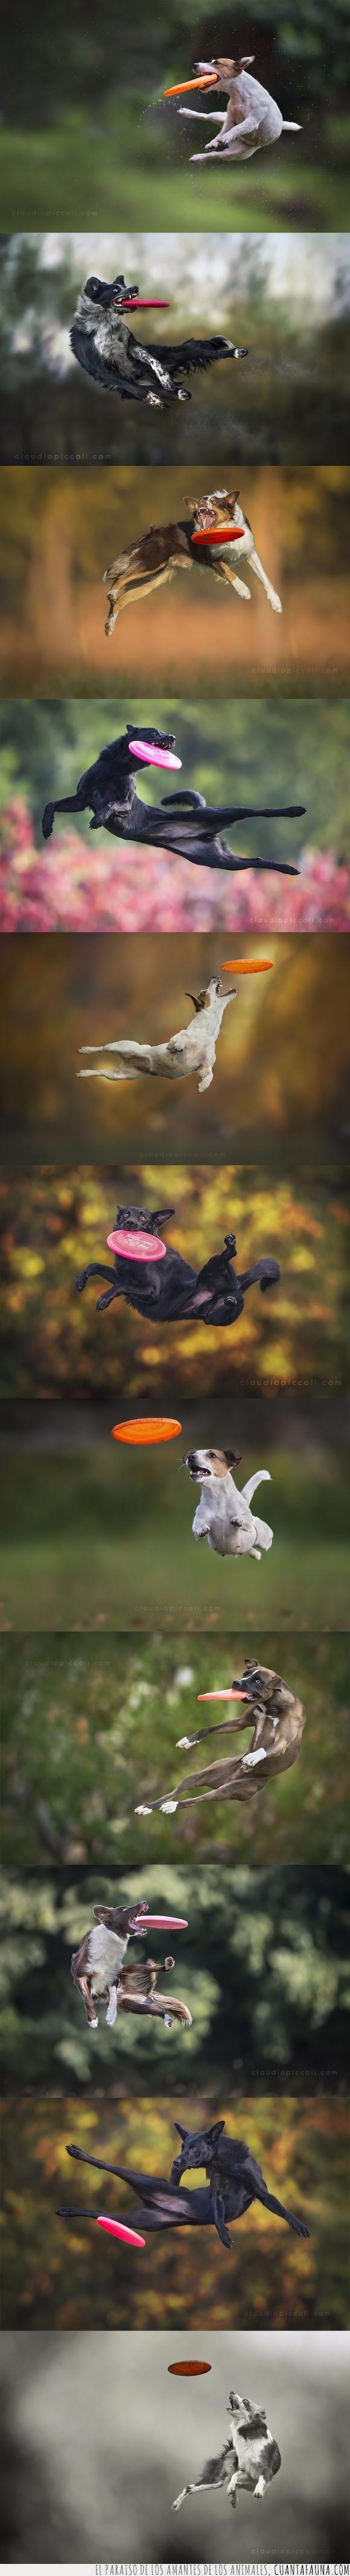 coger,derp,frisbee,momento,perro,saltar,salto